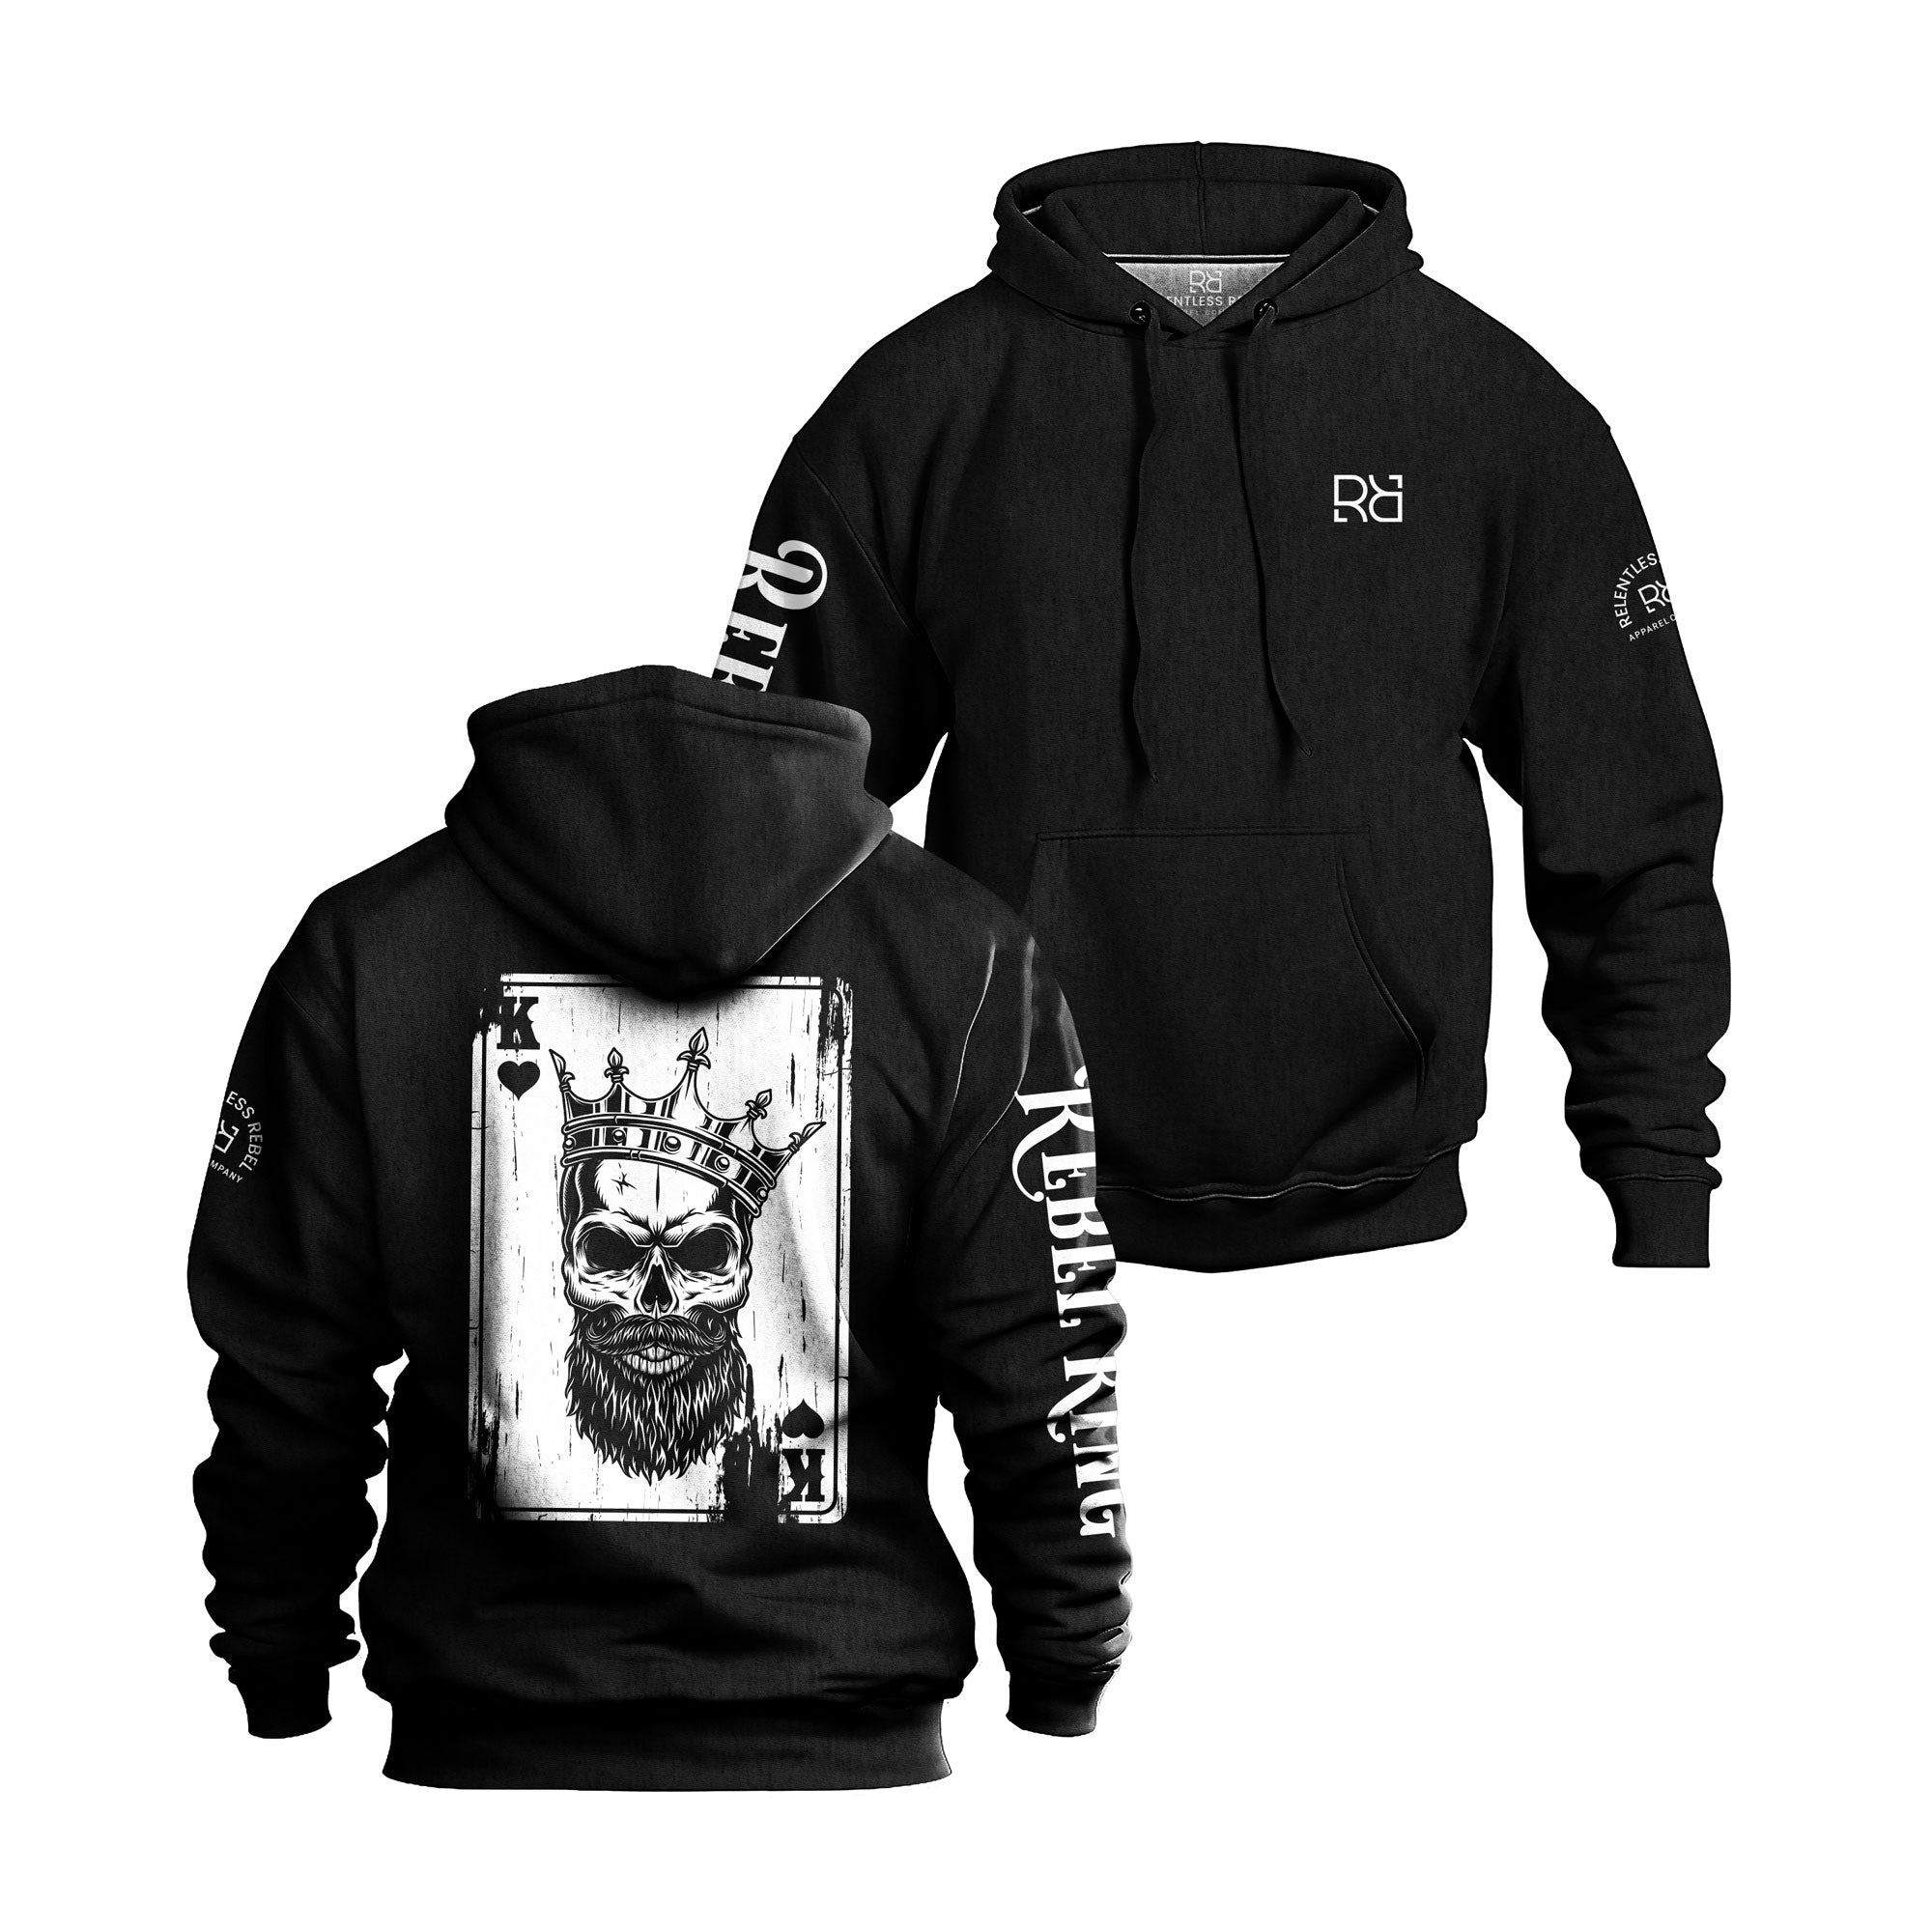 Black Rebel King back printed hoodie